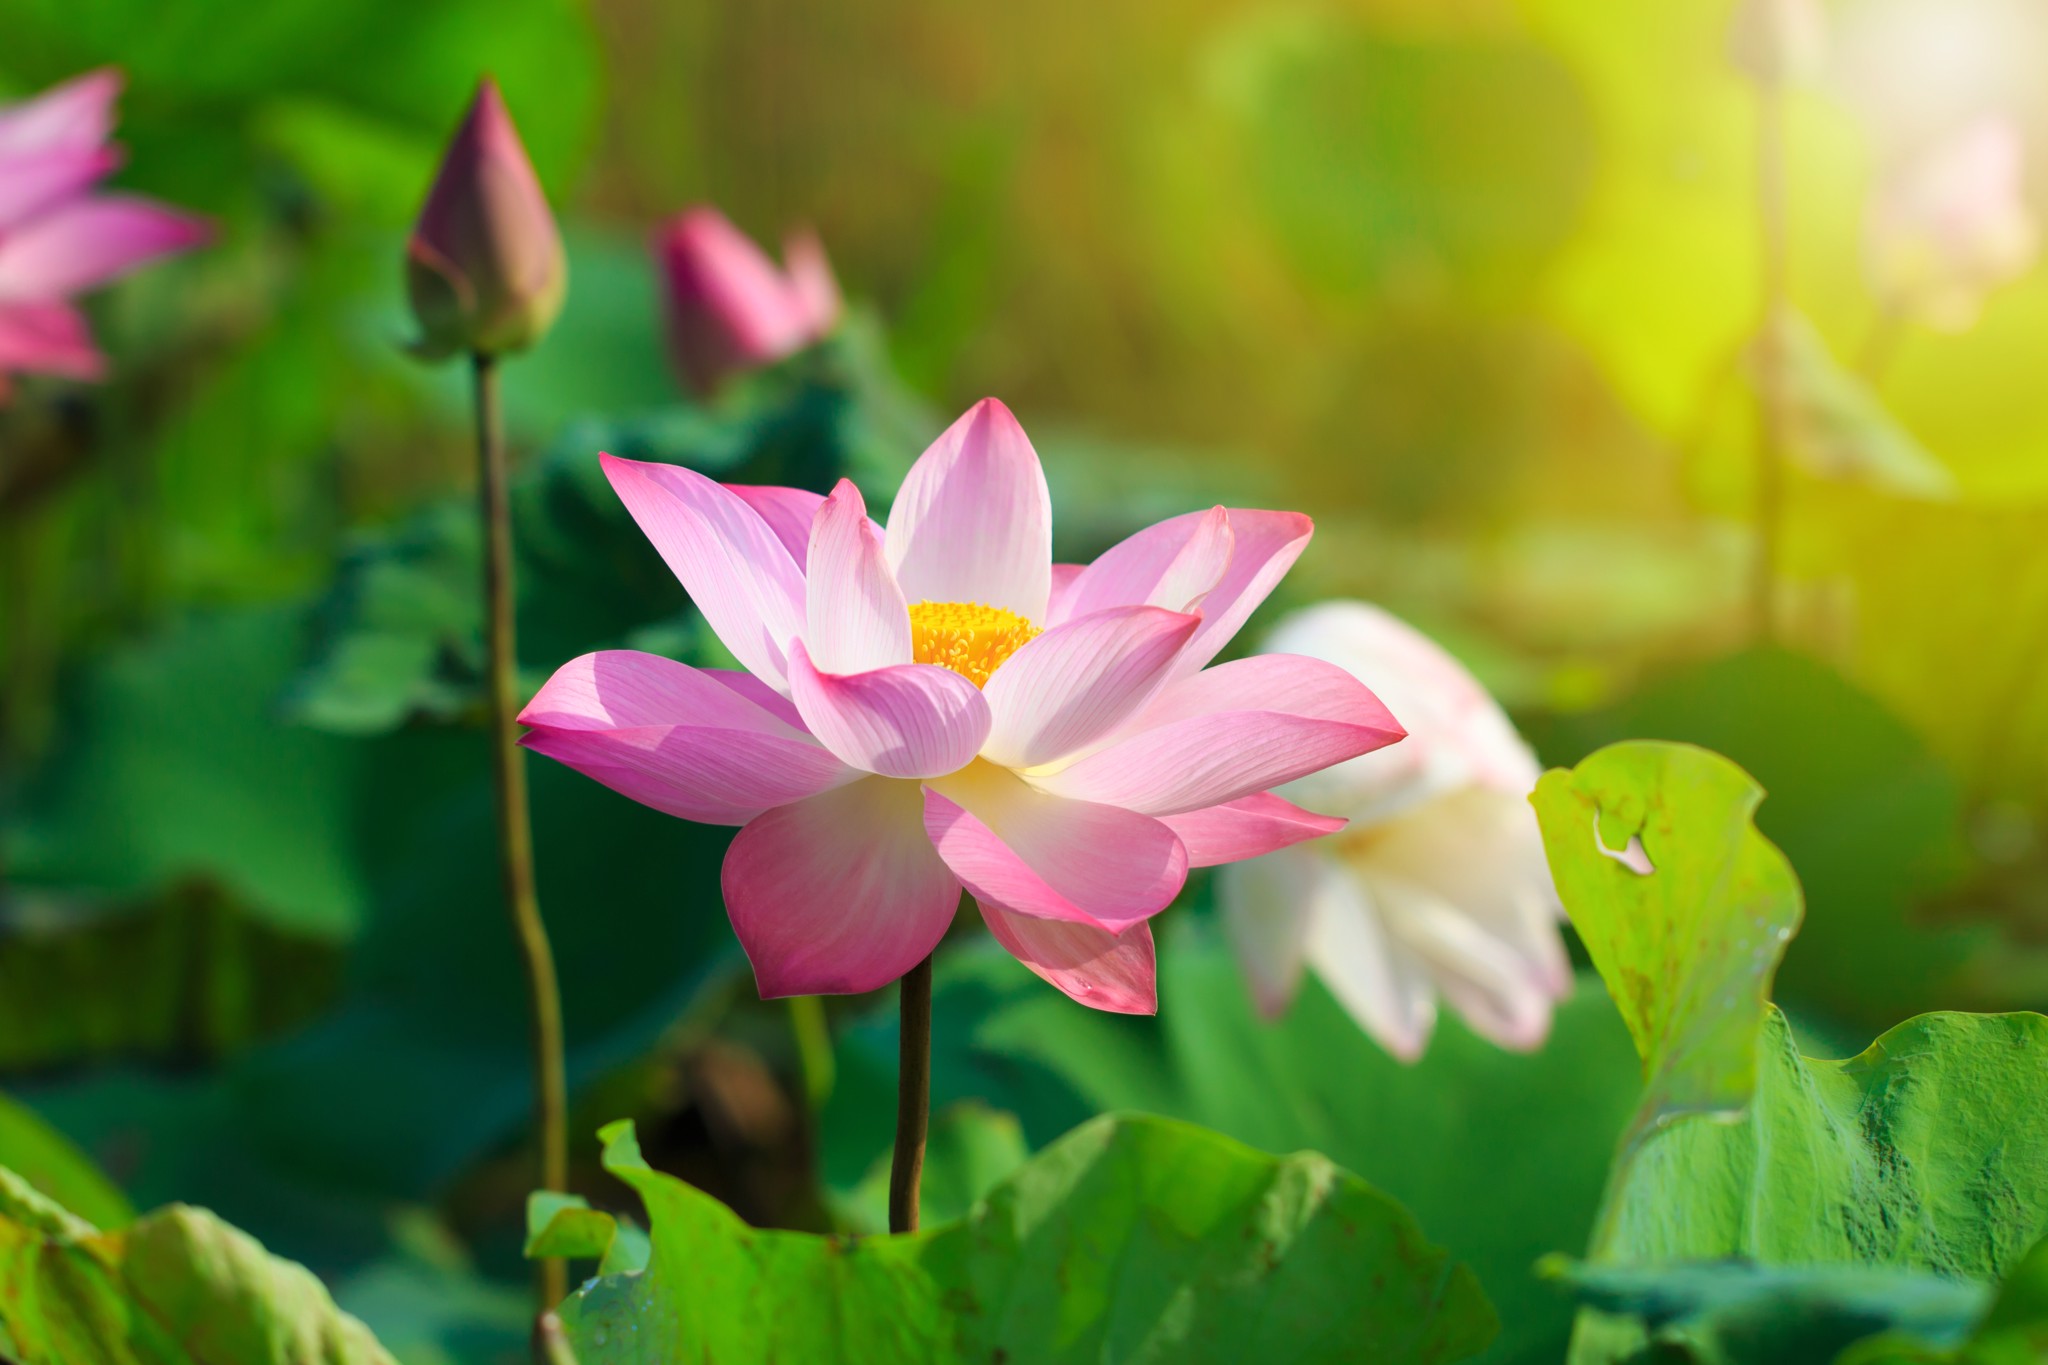 Hoa sen là biểu tượng của sự tinh khiết và nổi tiếng trong văn hóa Việt Nam. Hãy để hình nền hoa sen truyền cảm hứng cho bạn cả trong công việc lẫn cuộc sống.